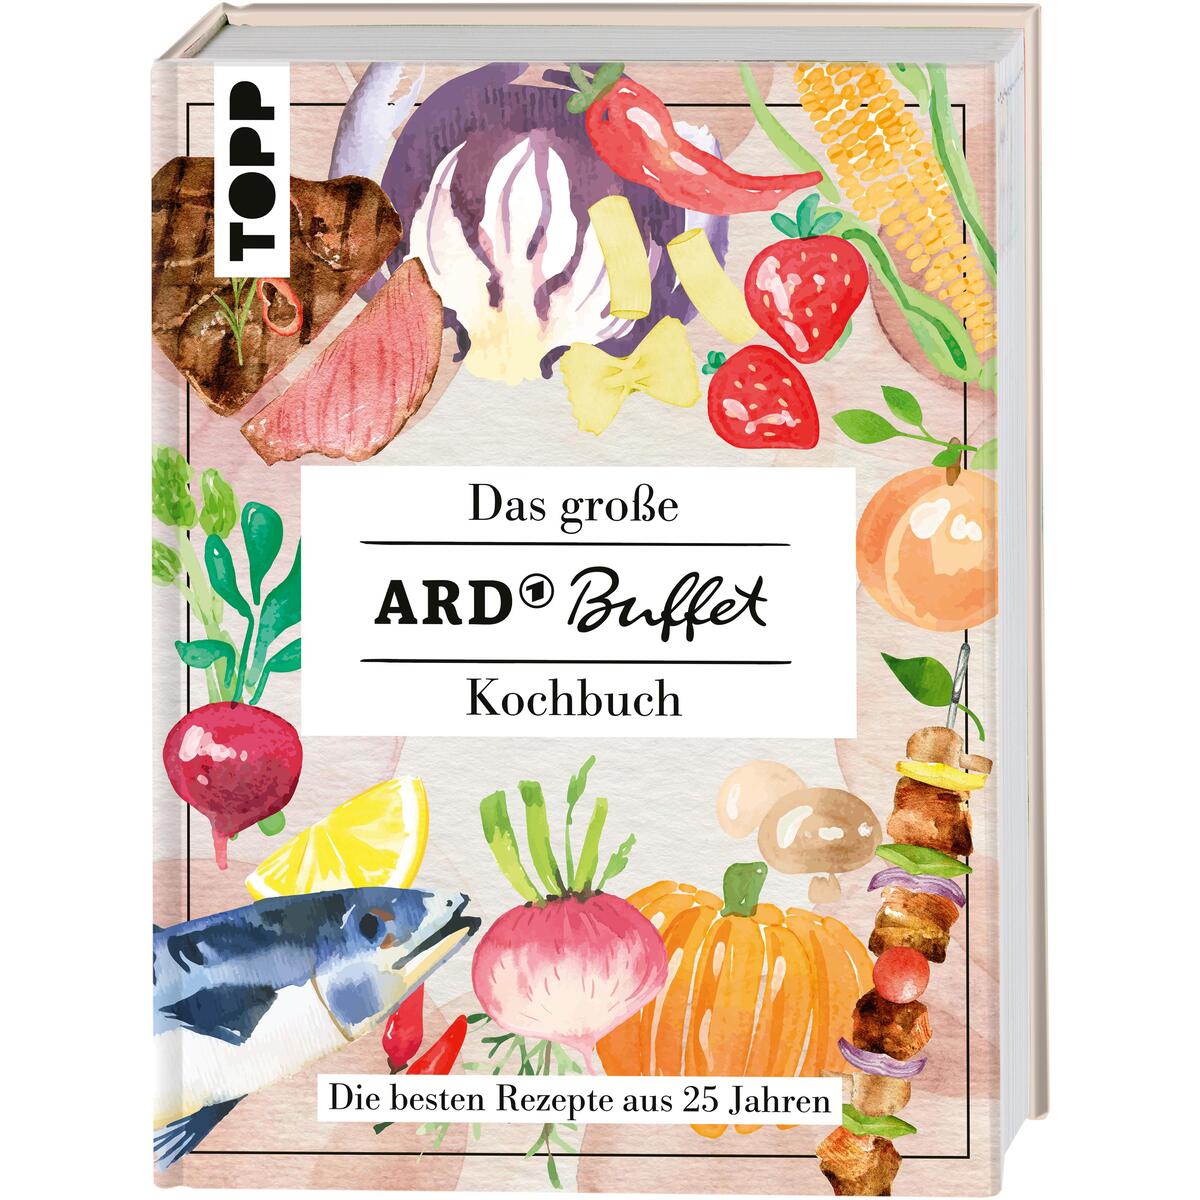 Das große ARD-Buffet-Kochbuch von Frech Verlag GmbH